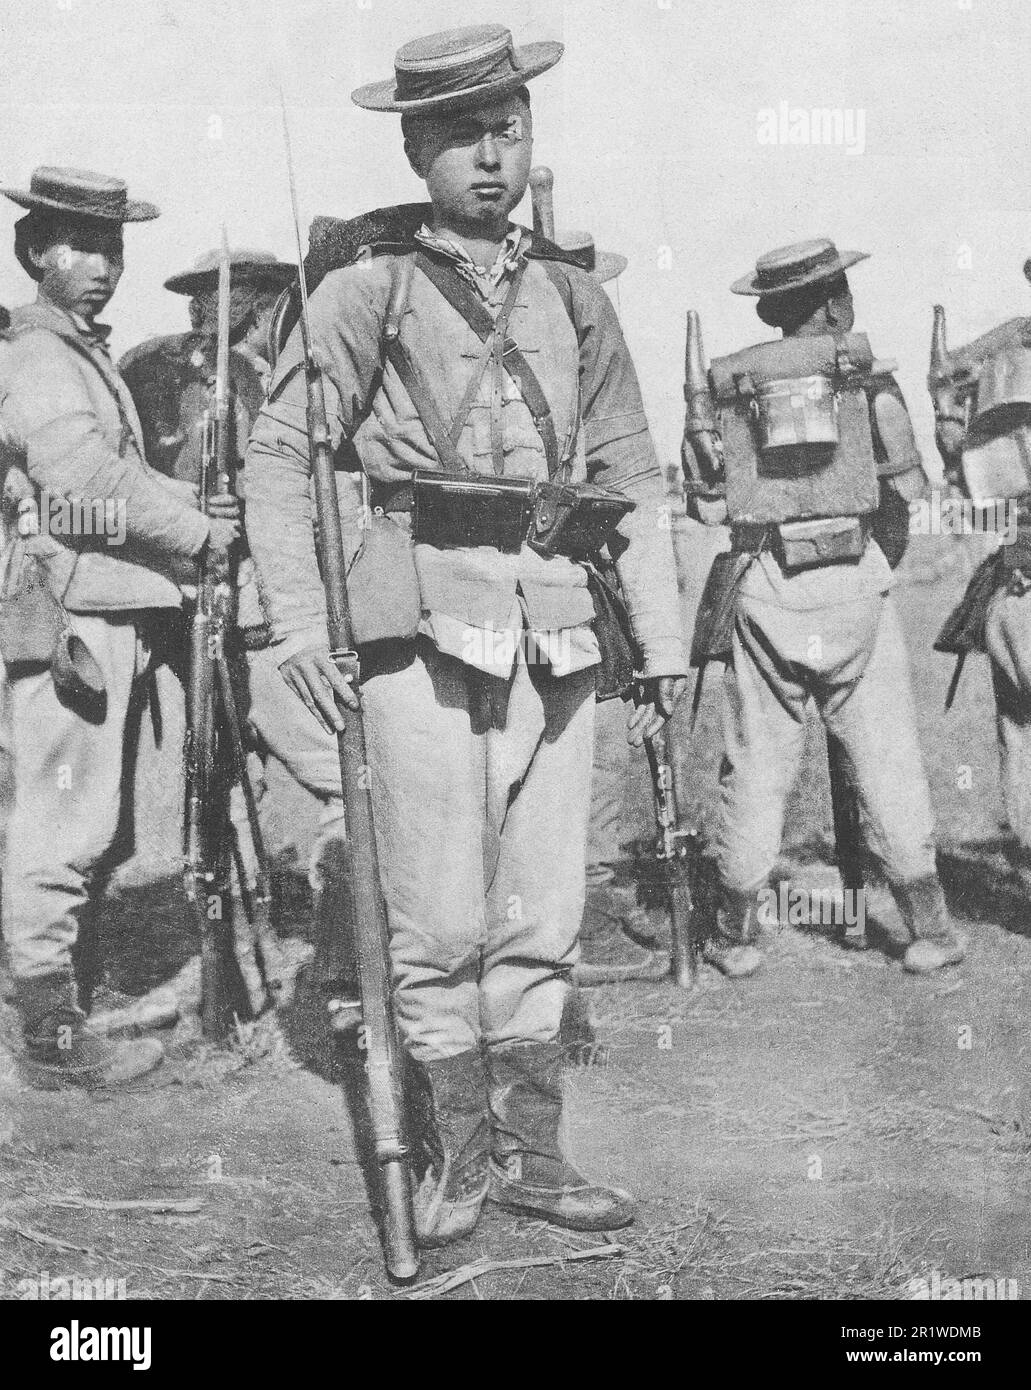 Fantini cinesi in completo equipaggiamento da combattimento. Foto dal 1911. Foto Stock